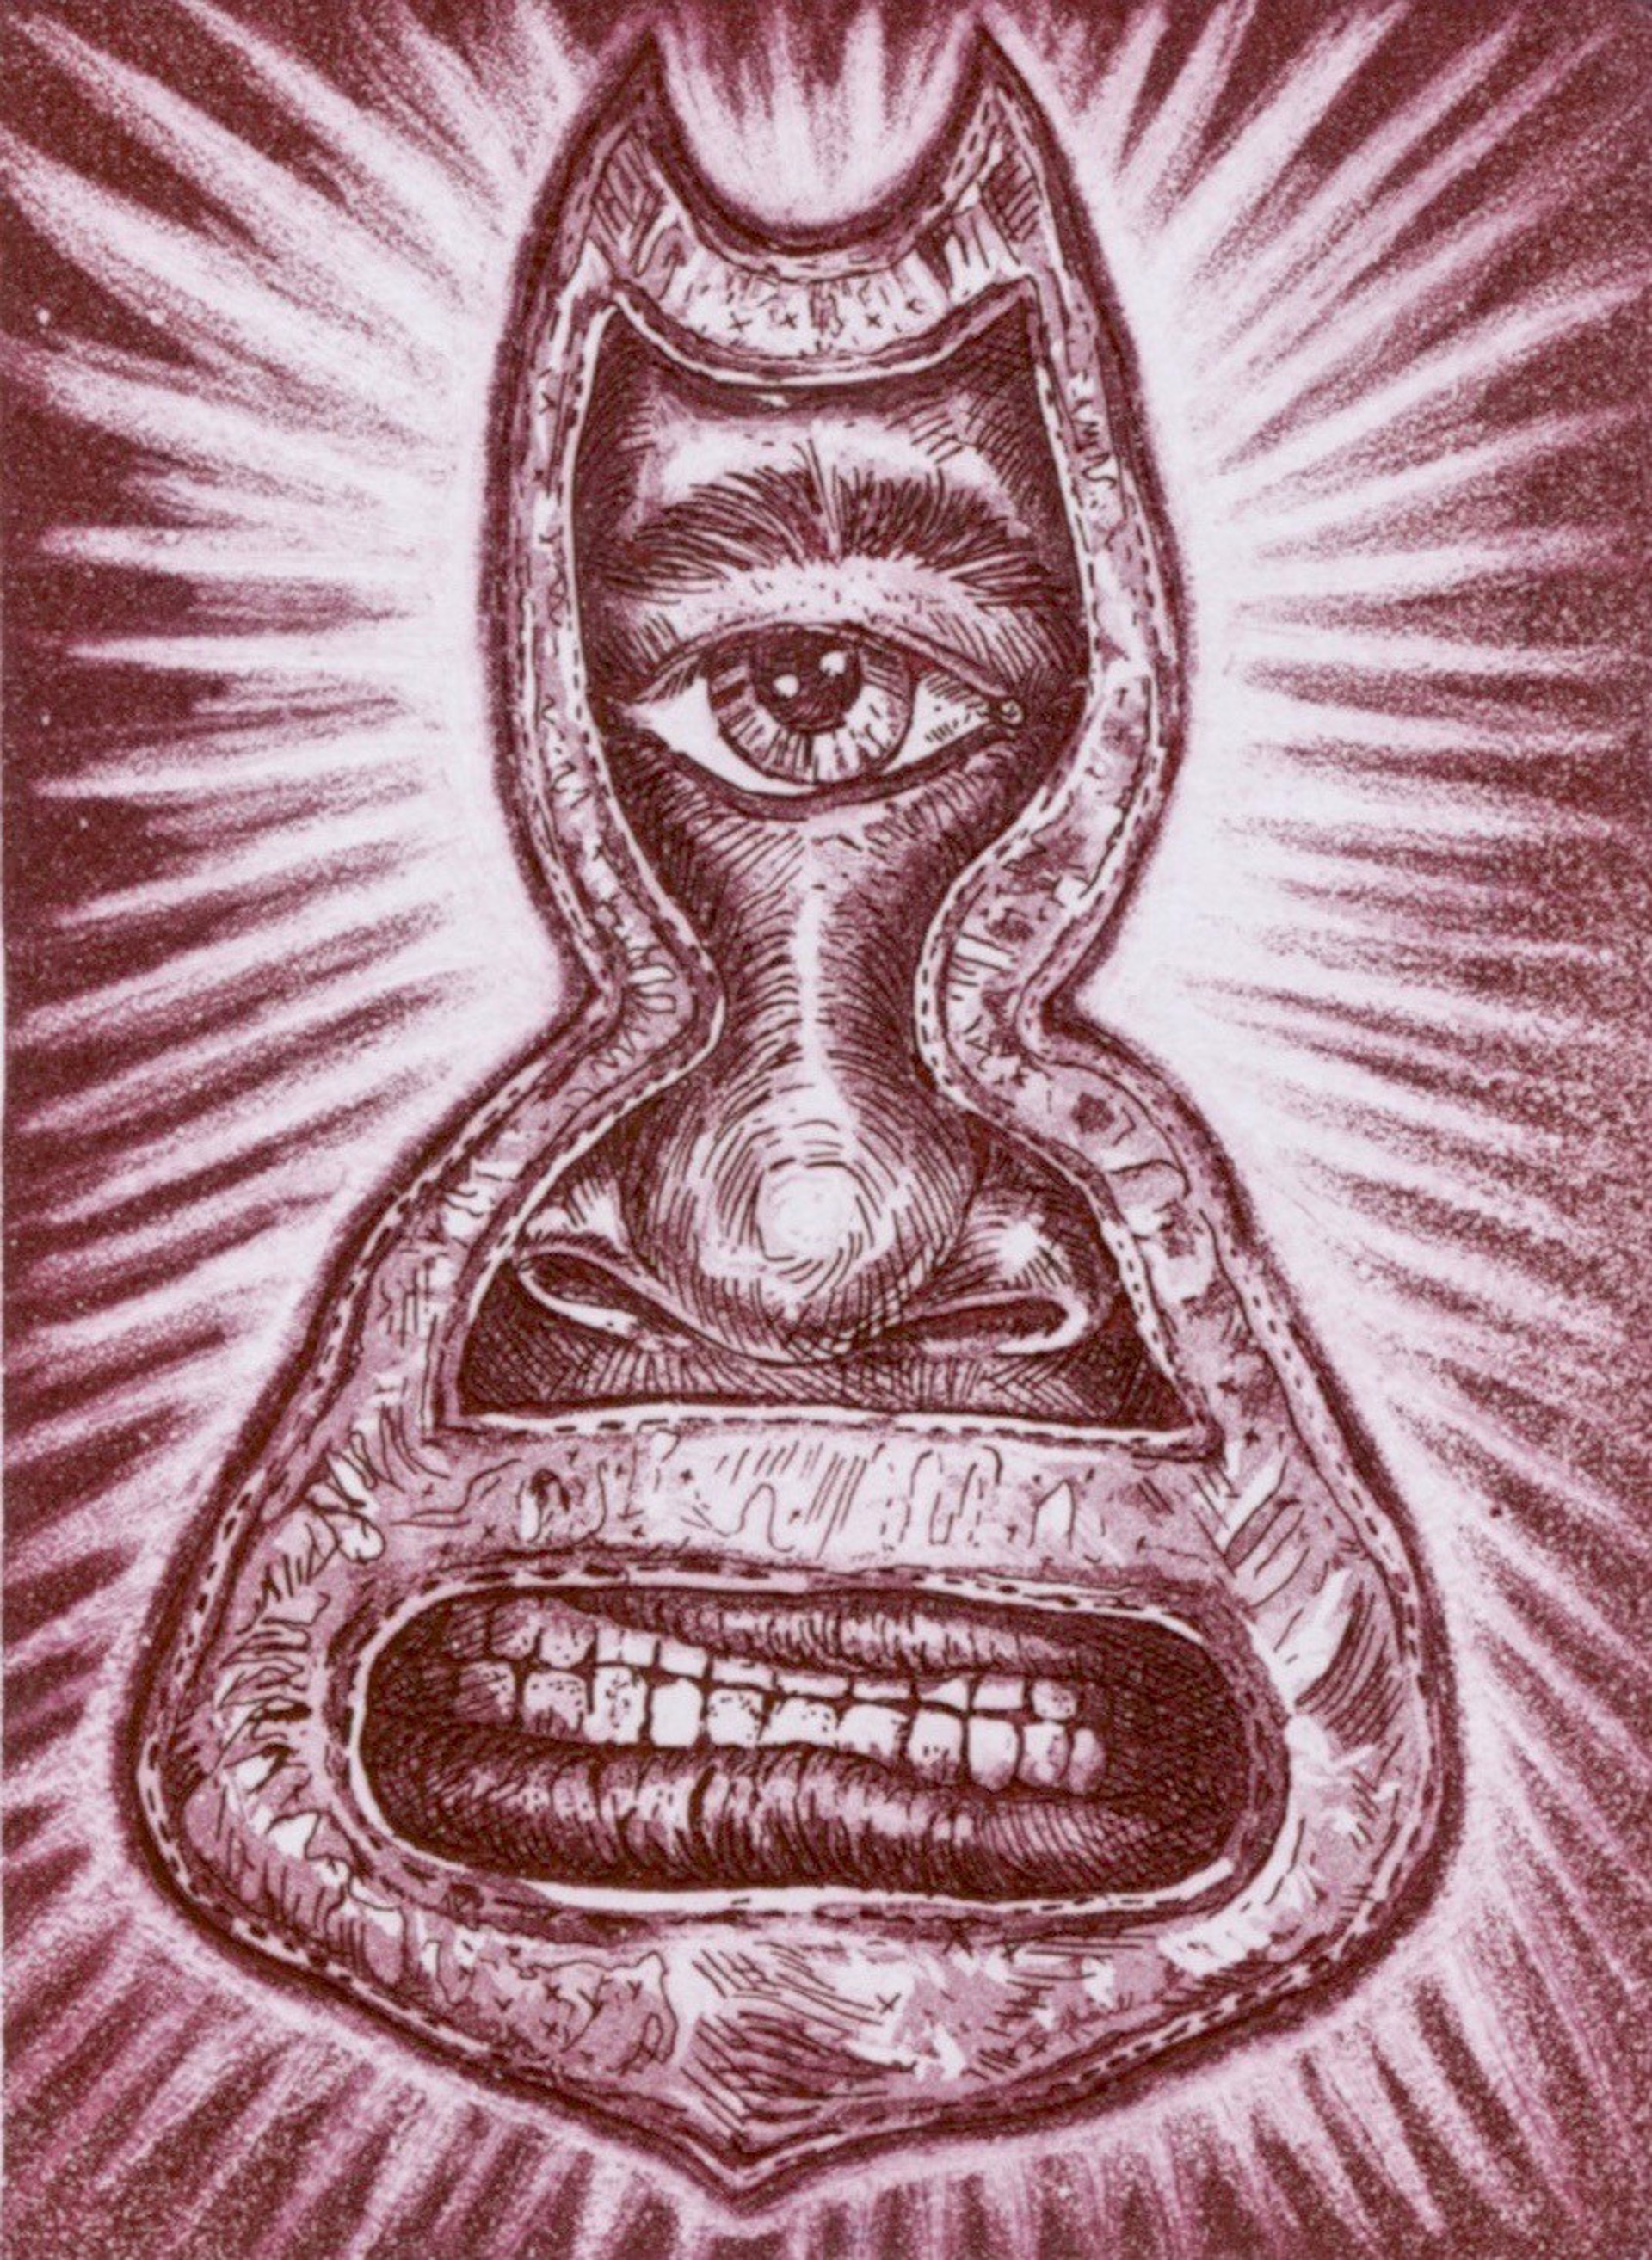 Cyc (Cyclops) by Juan de Dios Mora